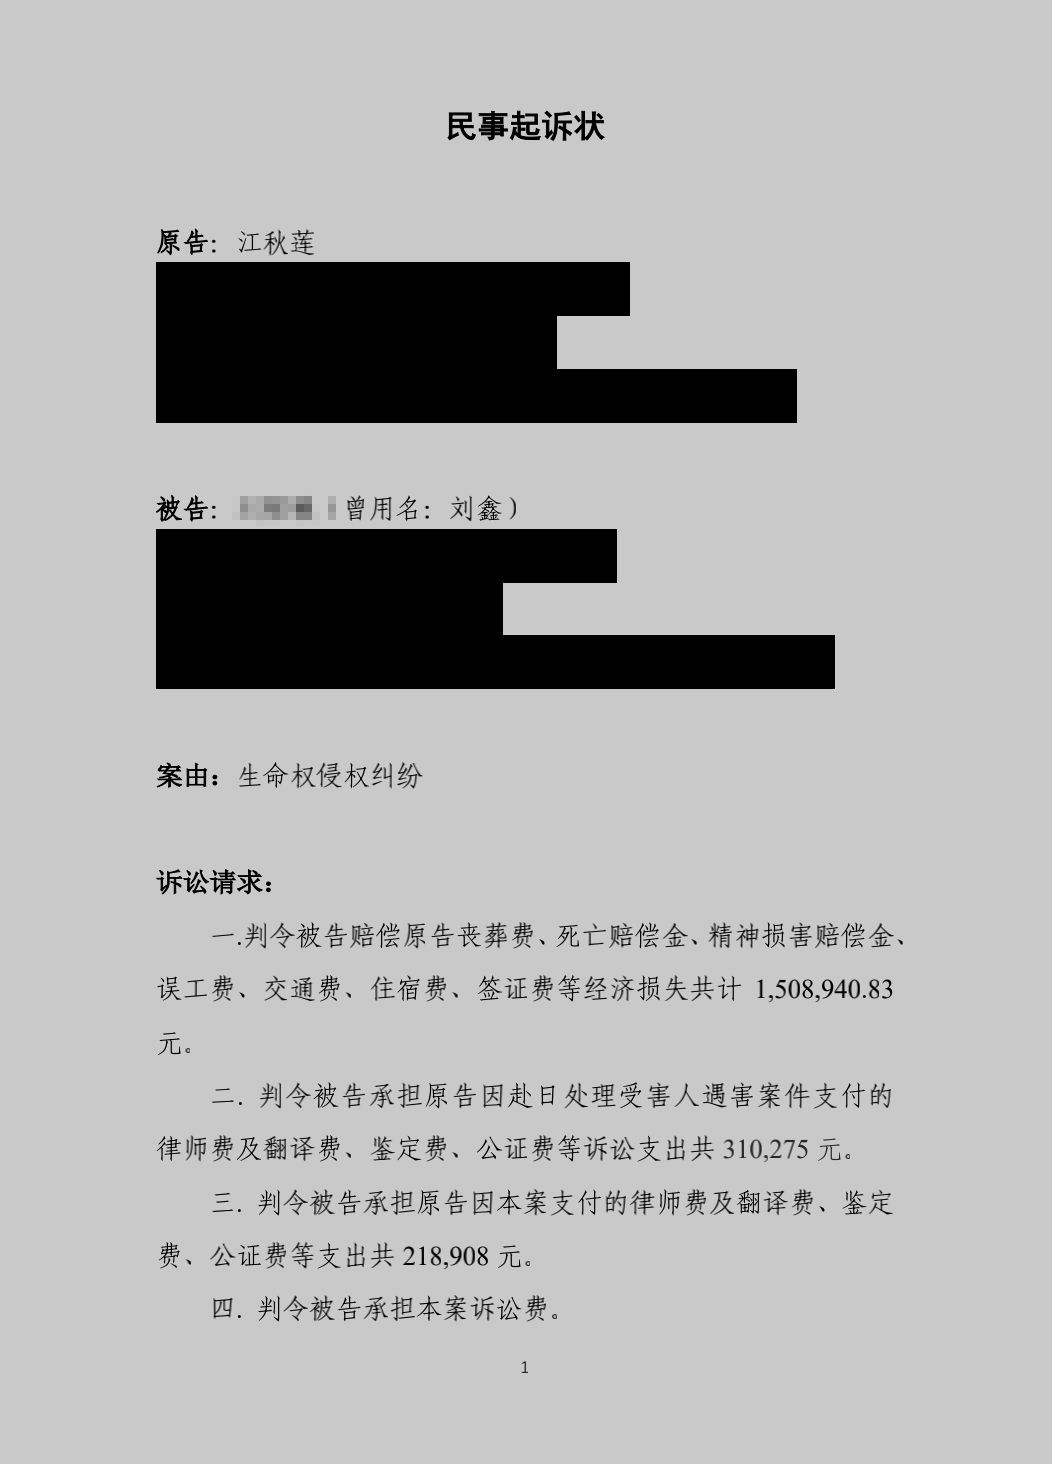 江歌母亲起诉状曝光 大量细节指出刘鑫有不可推卸之责任